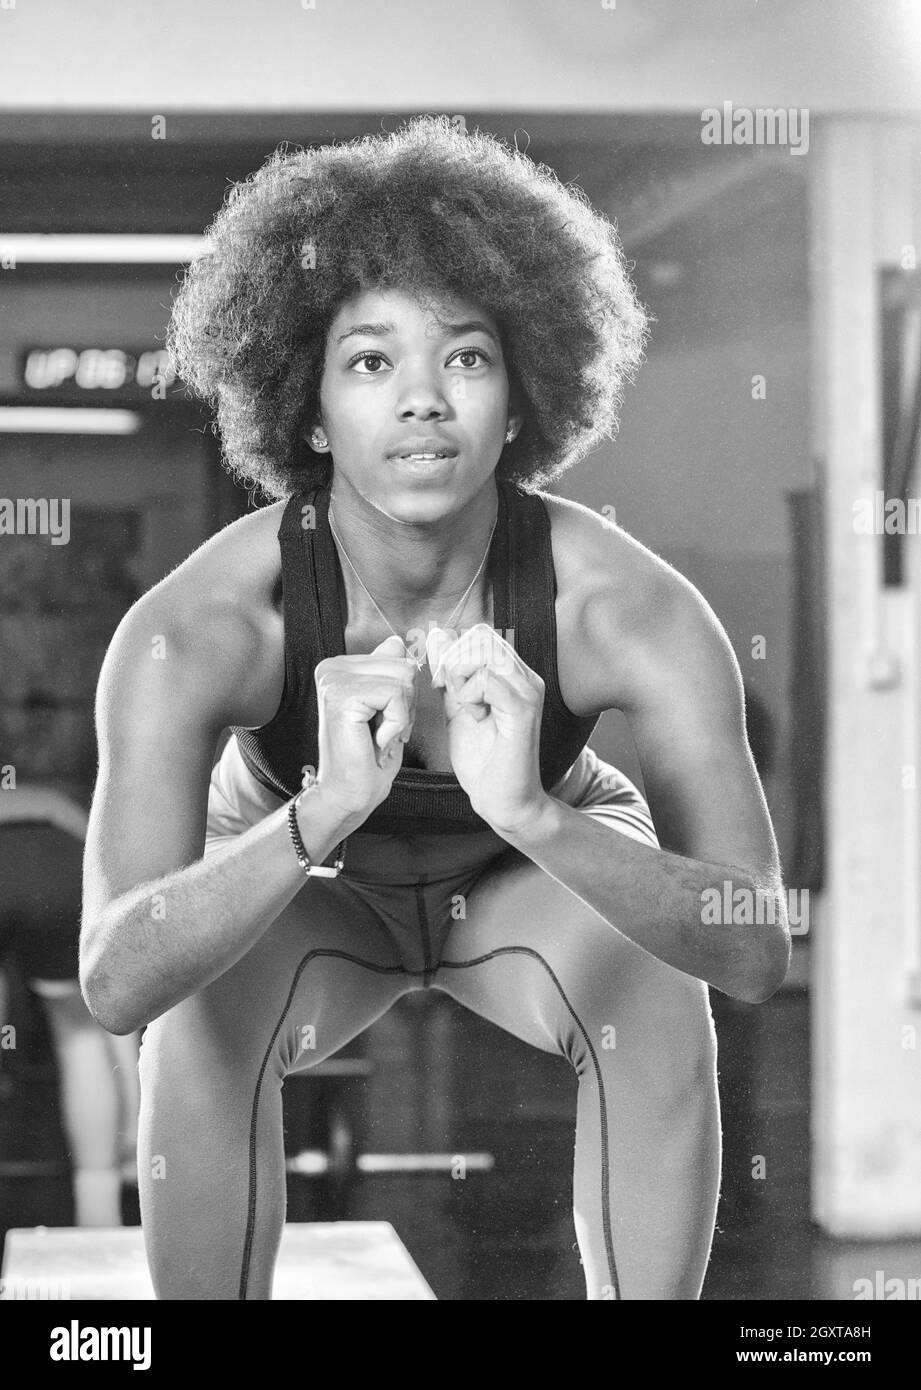 Passen Sie junge afrikanische Amerikanerin Feld springen in einem Fitnessstudio Crossfit Stil. Sportlerin ist Feld Sprünge im Fitnessstudio durchführen. Stockfoto